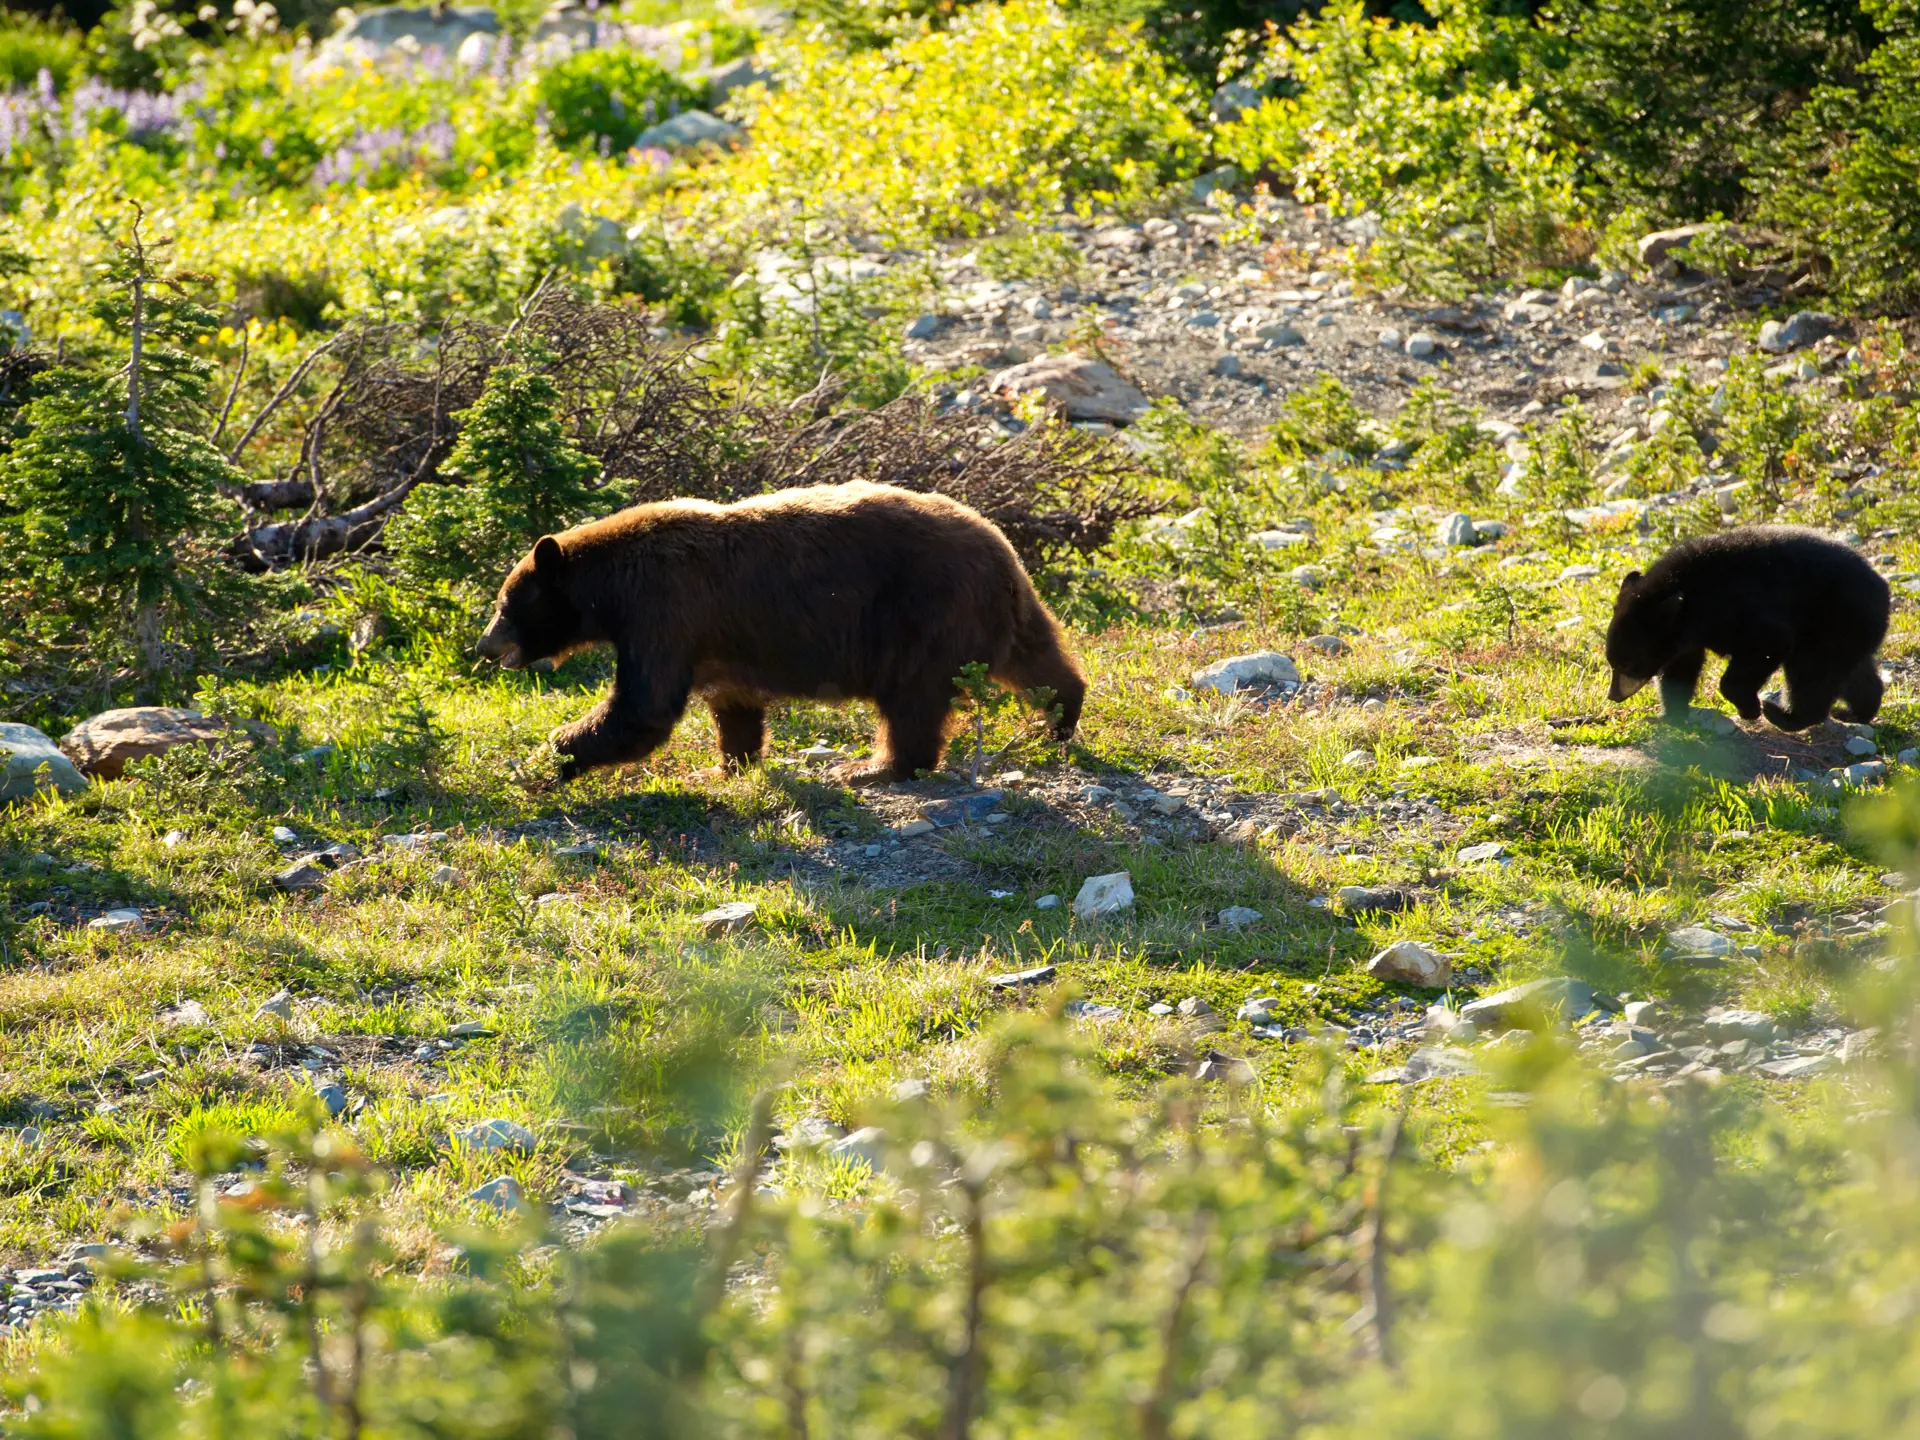 BJØRNELAND - Bjørnene ses ofte i sommermånederne, når de sammen med deres unger skal have fyldt depoterne, inden vinteren kommer